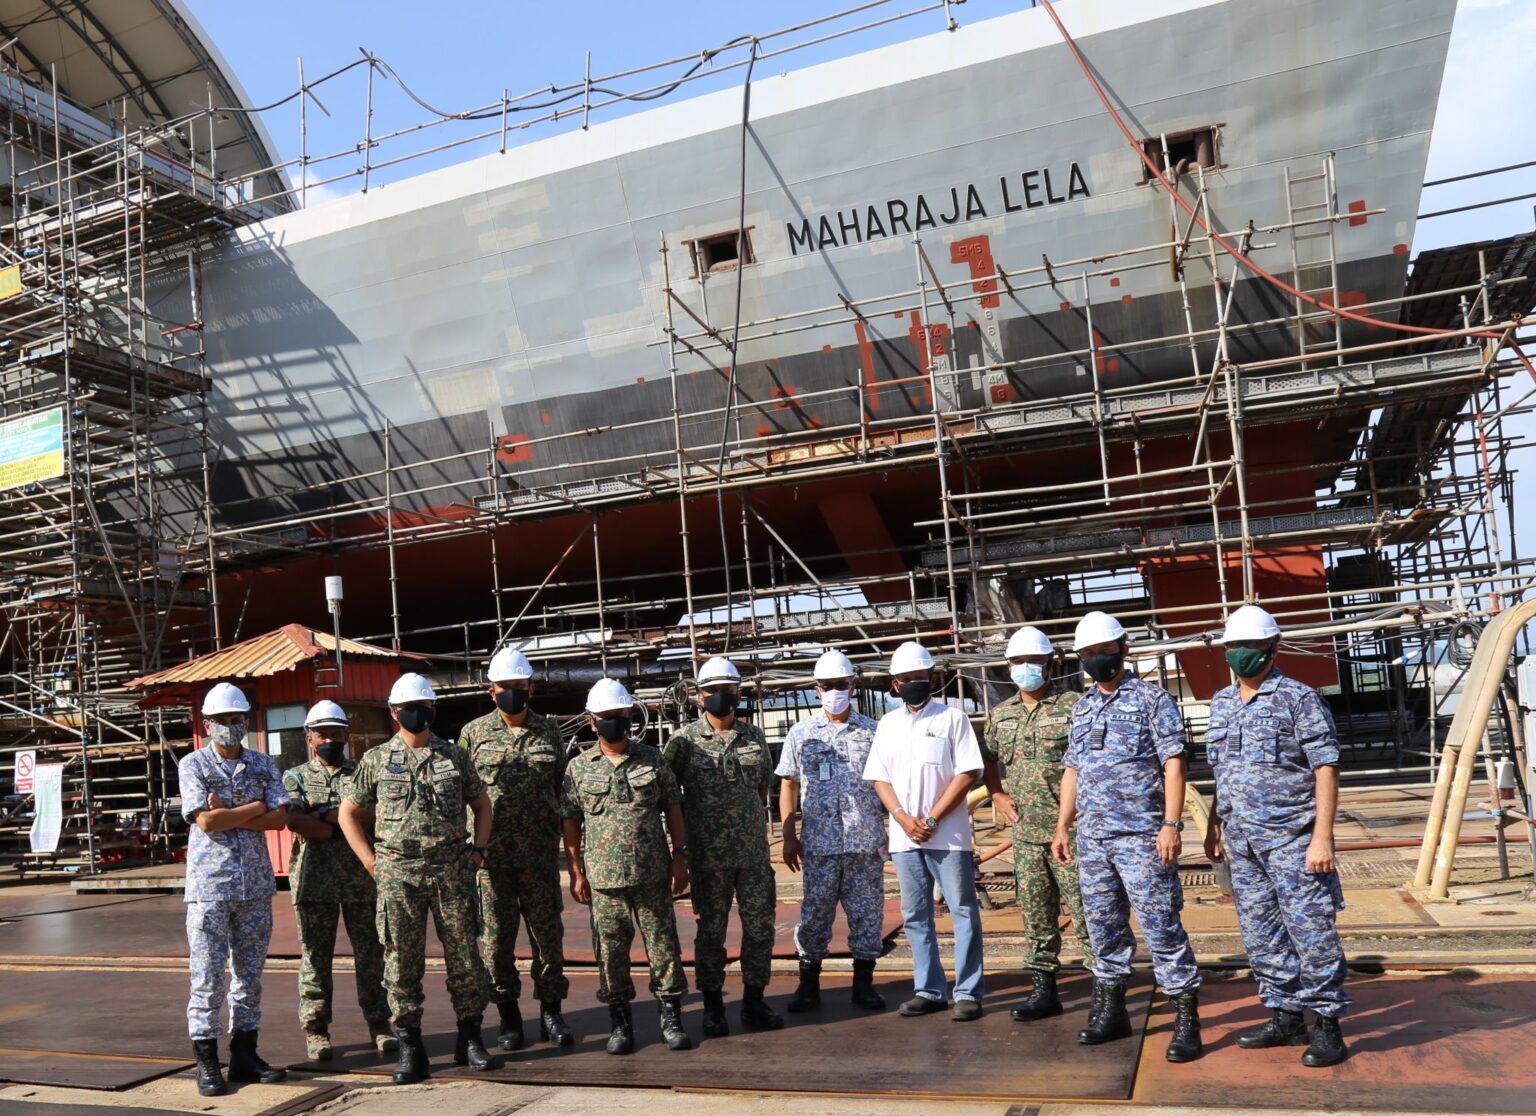 Penampakan KD Maharaja Lela, kapal LCS impian Malaysia yang karatan karena molor digarap.